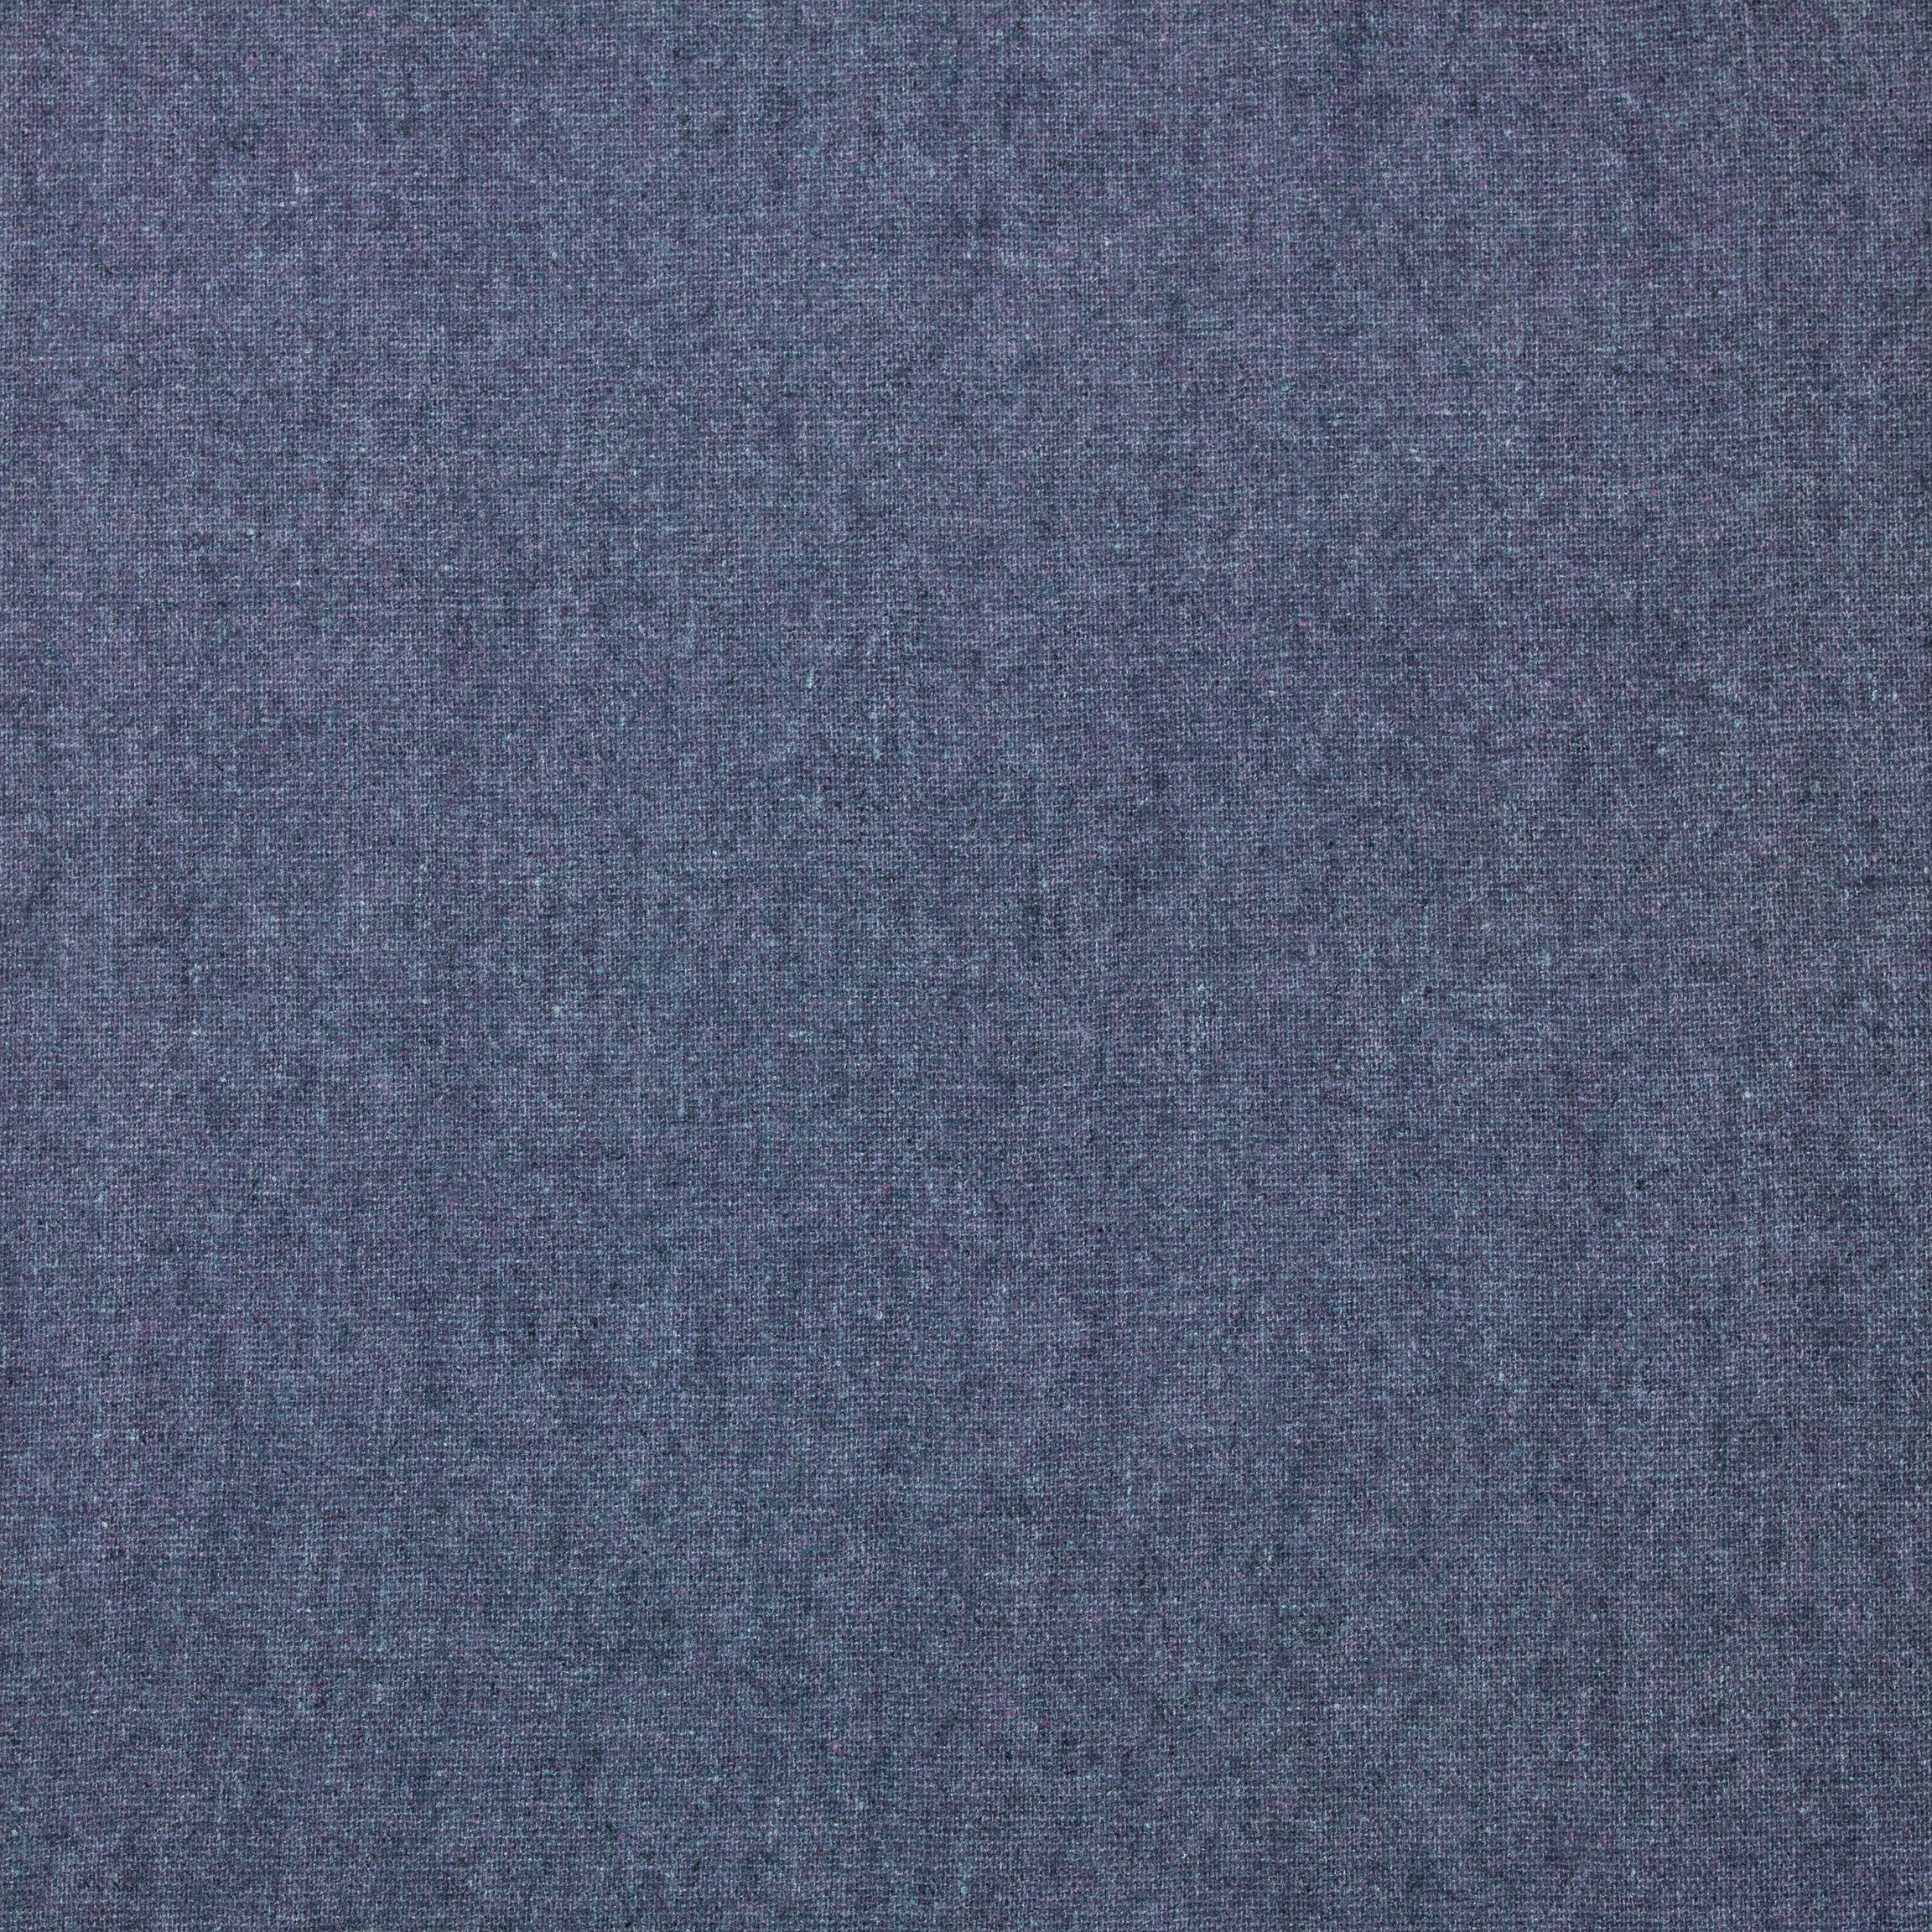  Портьерная ткань ANGORA PURPLE, ширина 135 см  - Фото